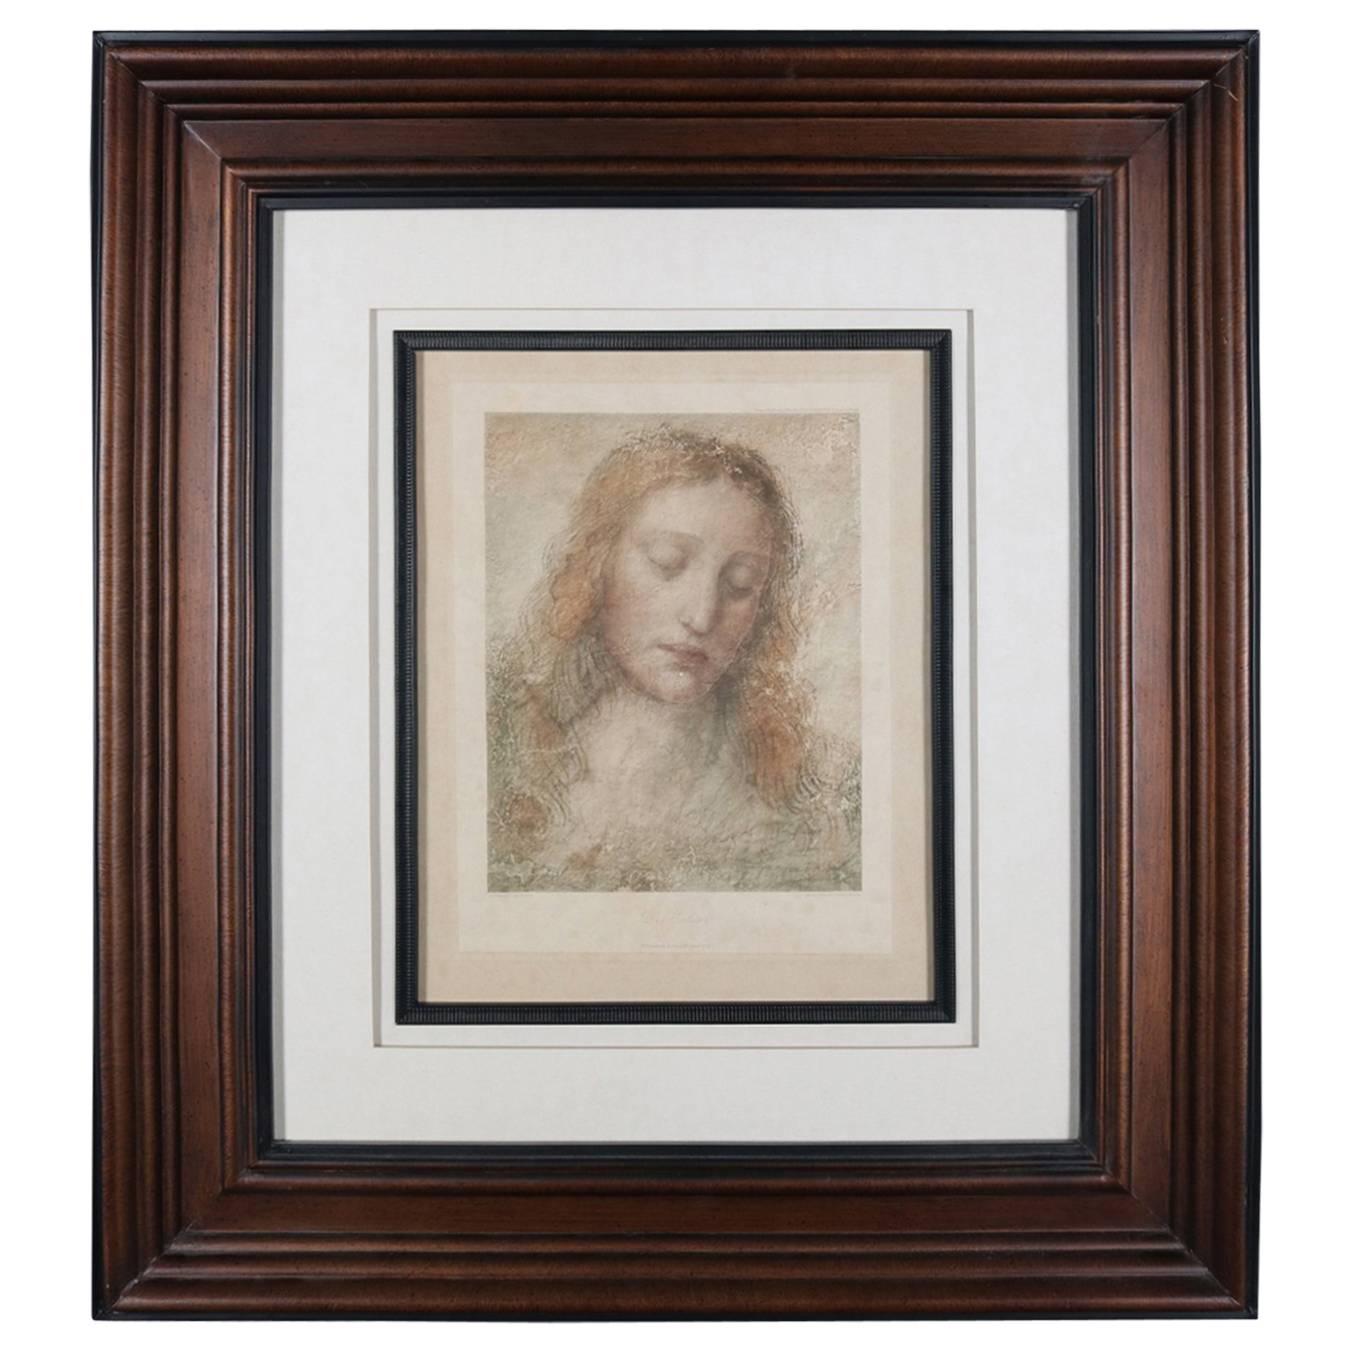 Contemporary Framed Print "The Redeemer" After Leonardo Da Vinci, 20th Century